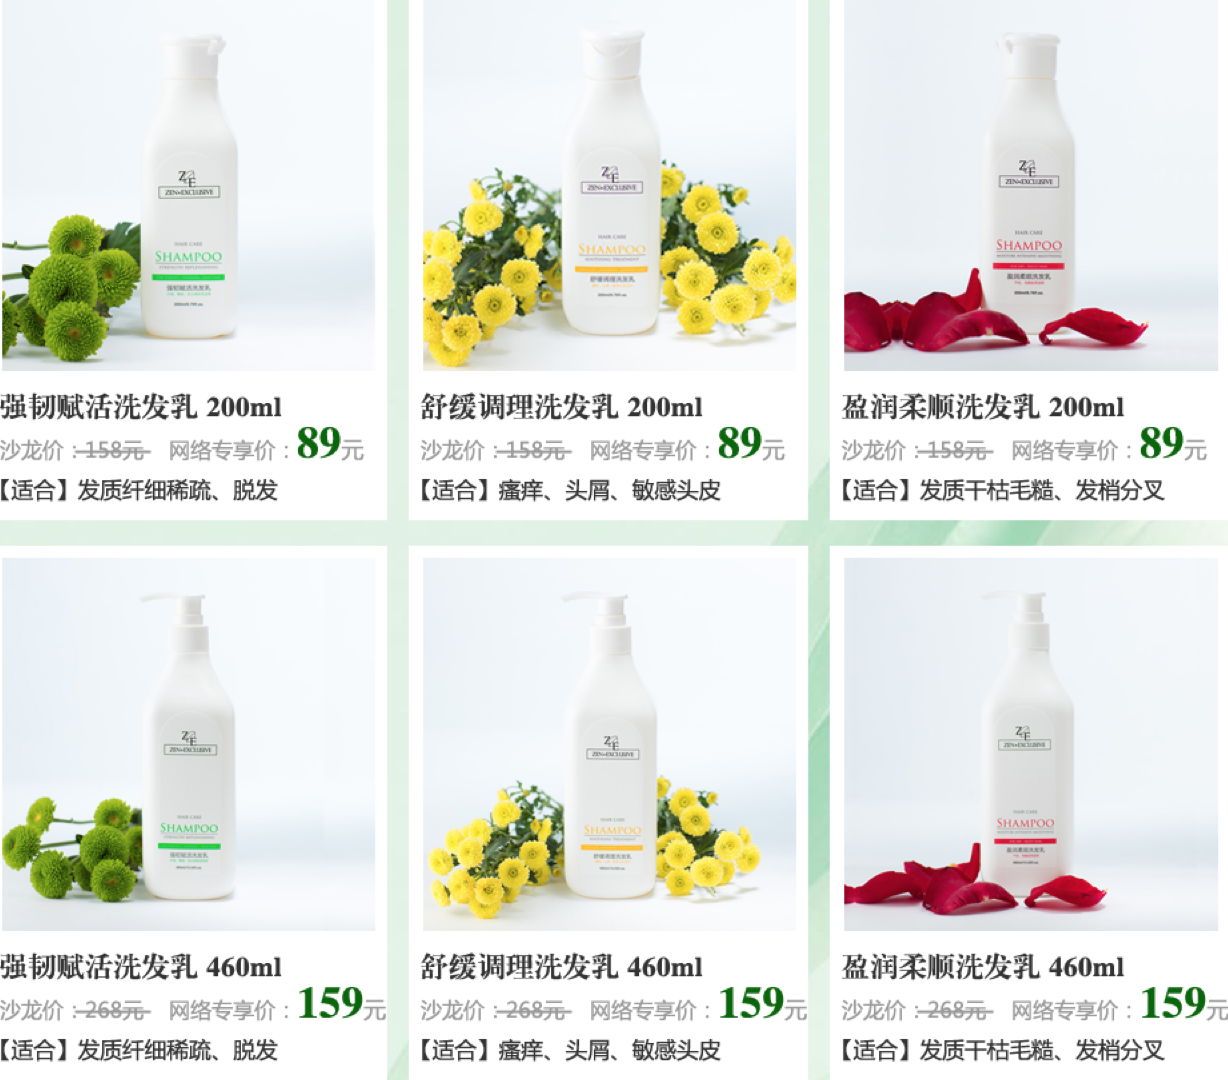 无硅油概念为新品牌提供市场切入机会，主打“植物配方”的 ZE正宜期望为中国消费者提供高性价比的选择